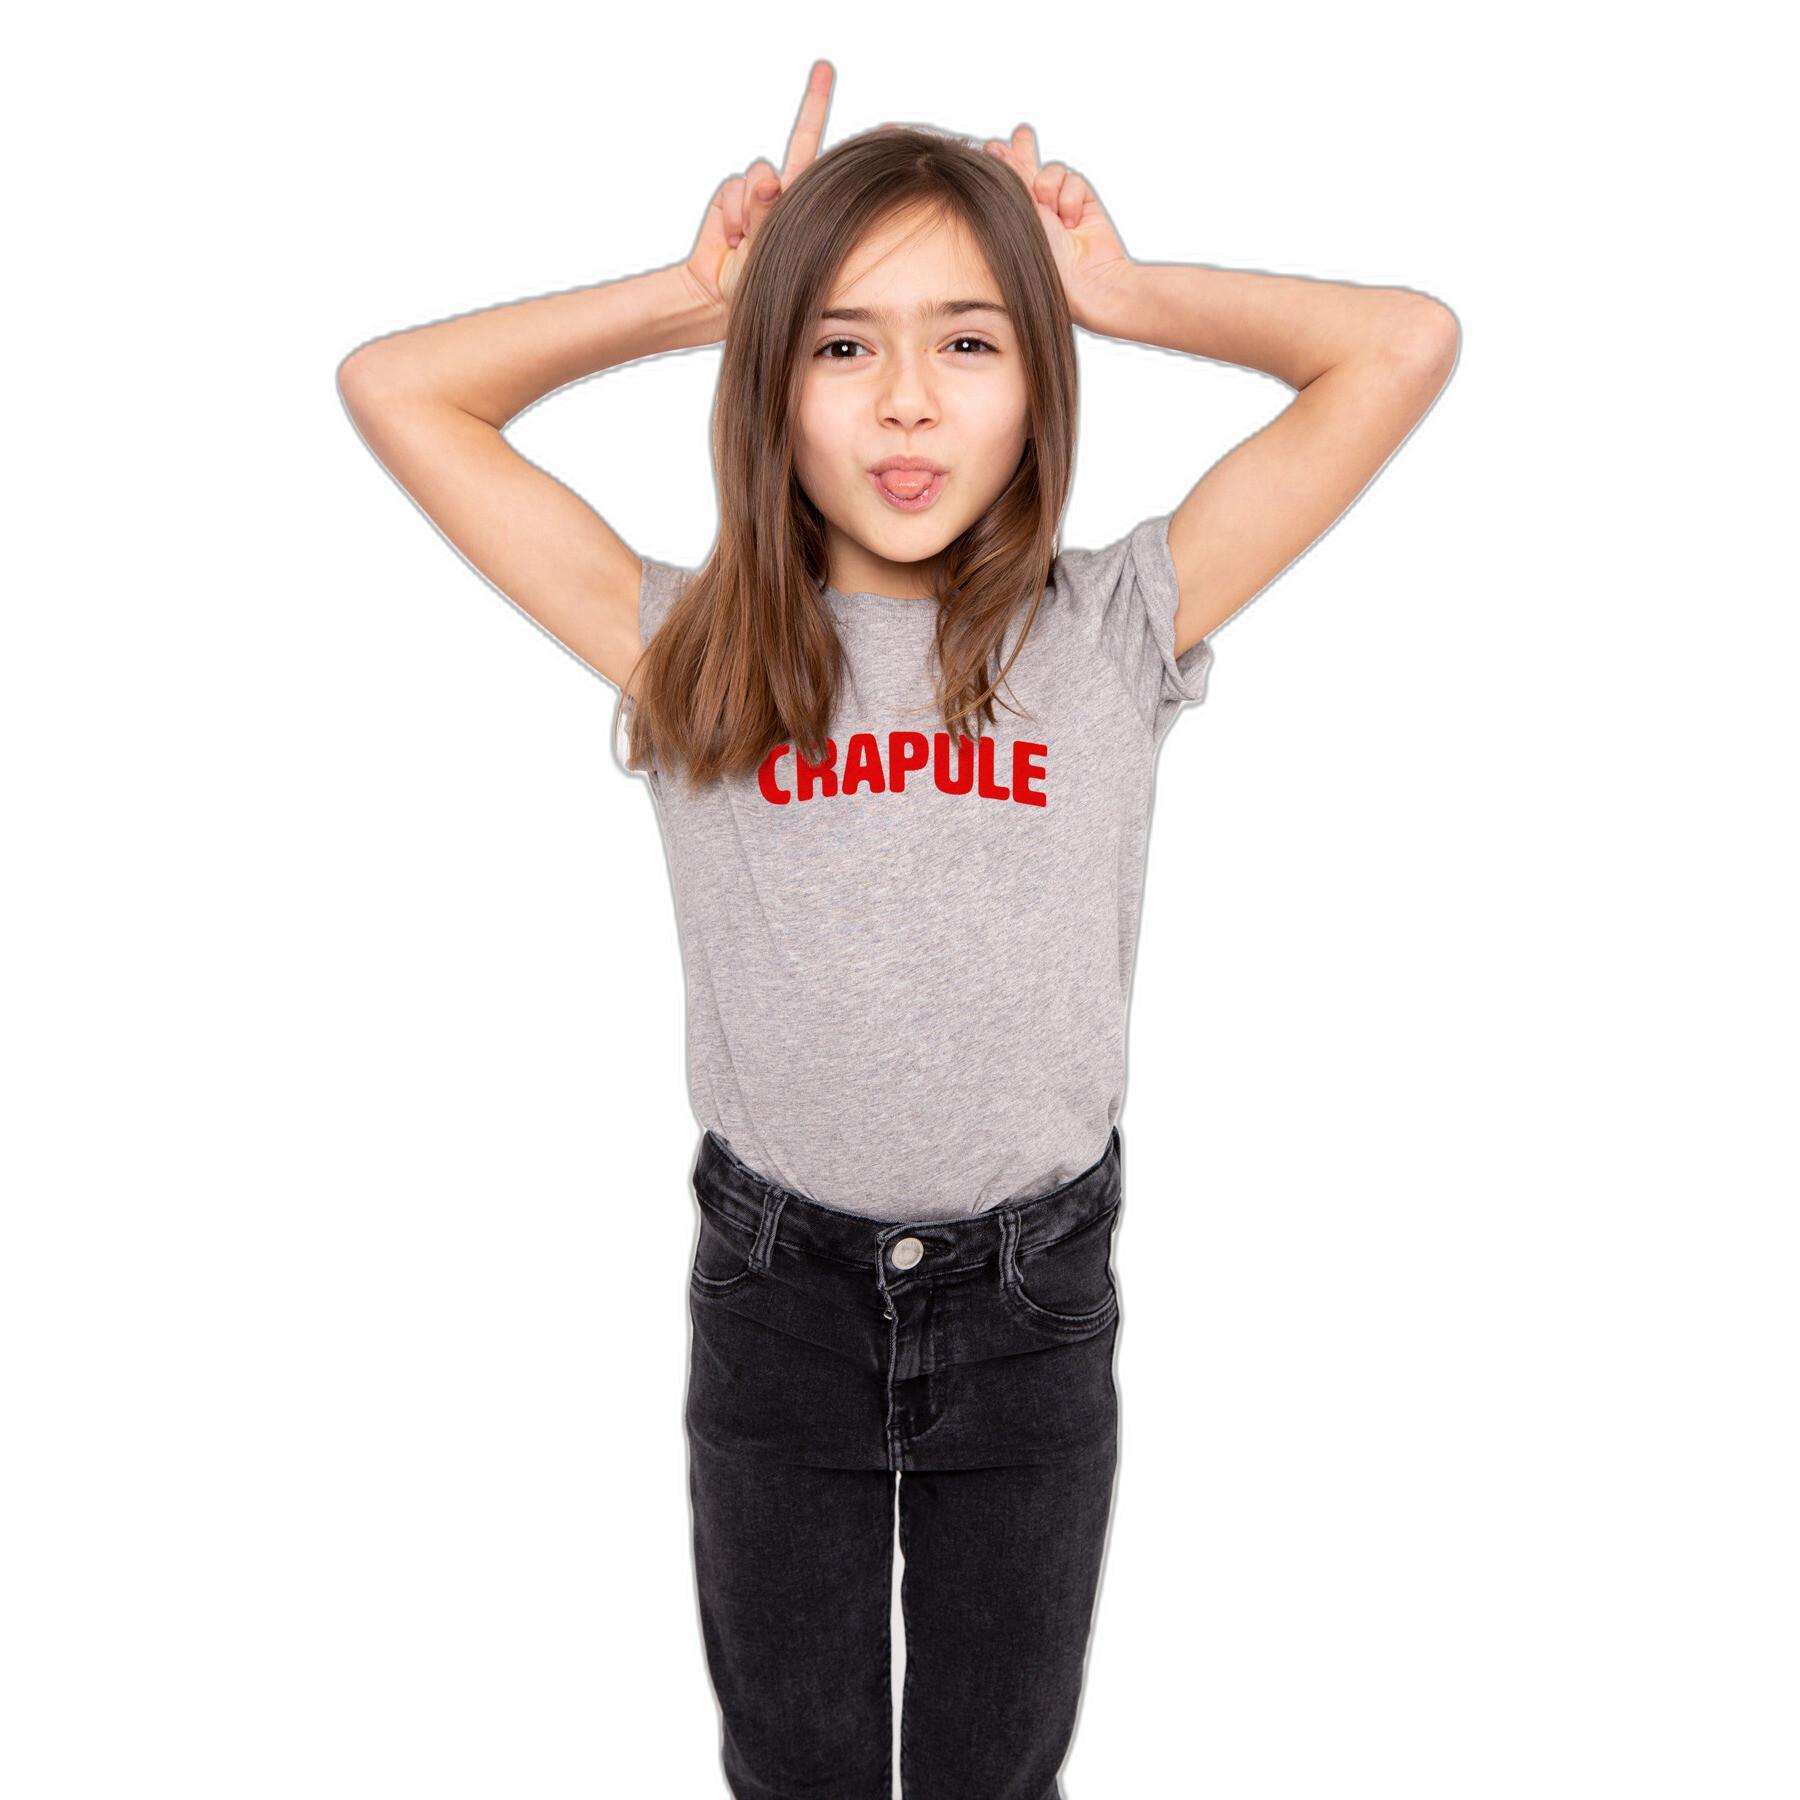 Kinder-T-shirt French Disorder Sacha Crapule